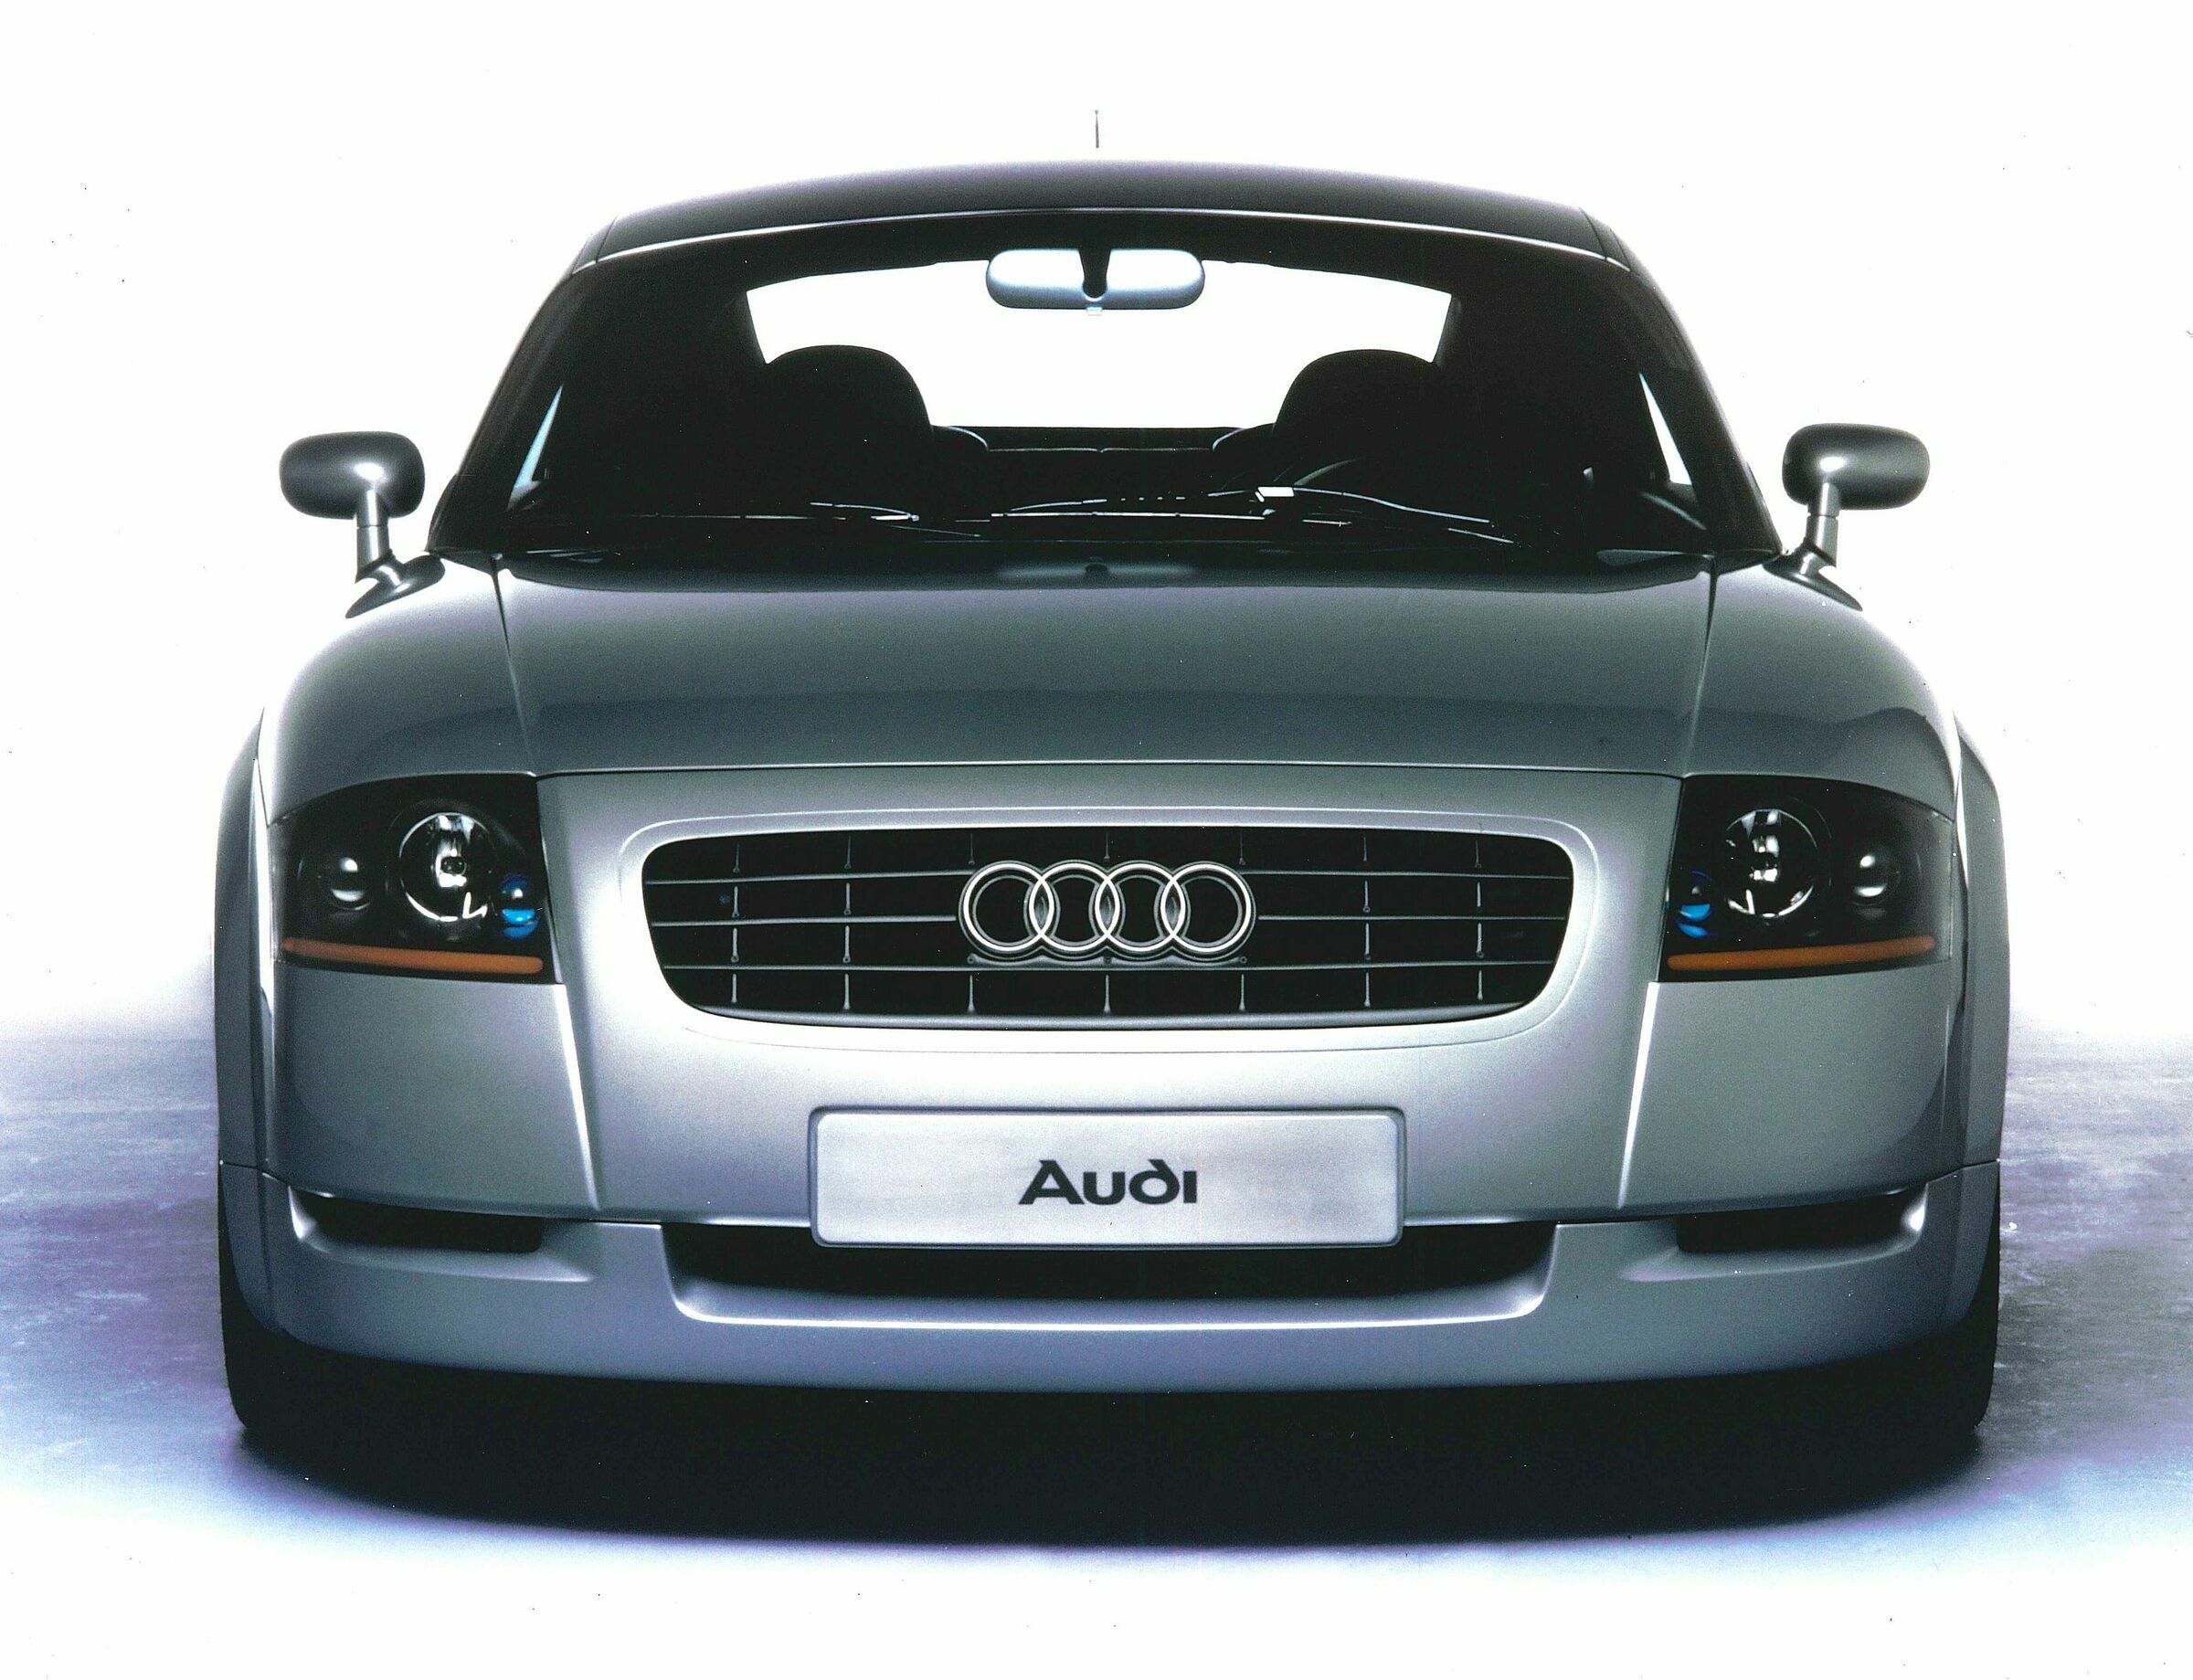 Audi TT concept car_3